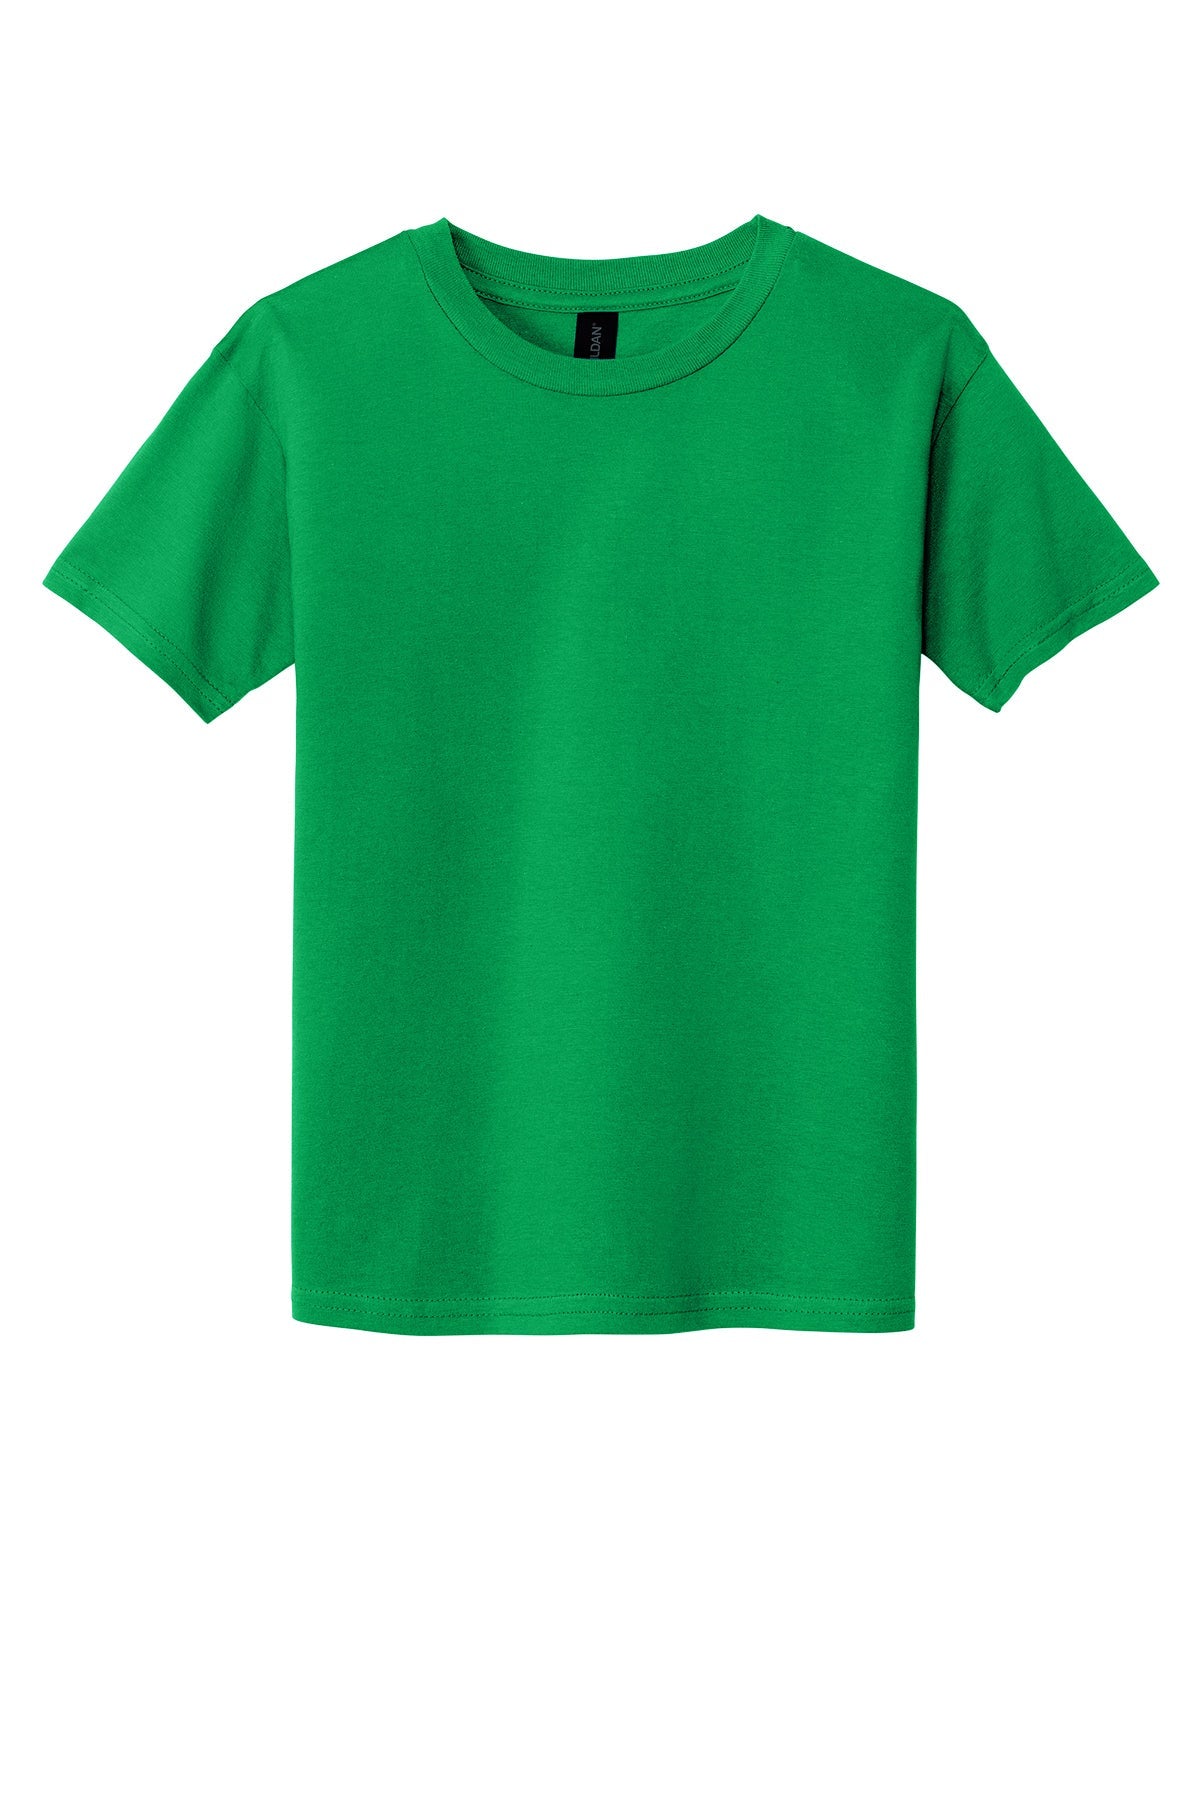 Gilden 64000B Youth T-Shirt Yth Small / Irish Green